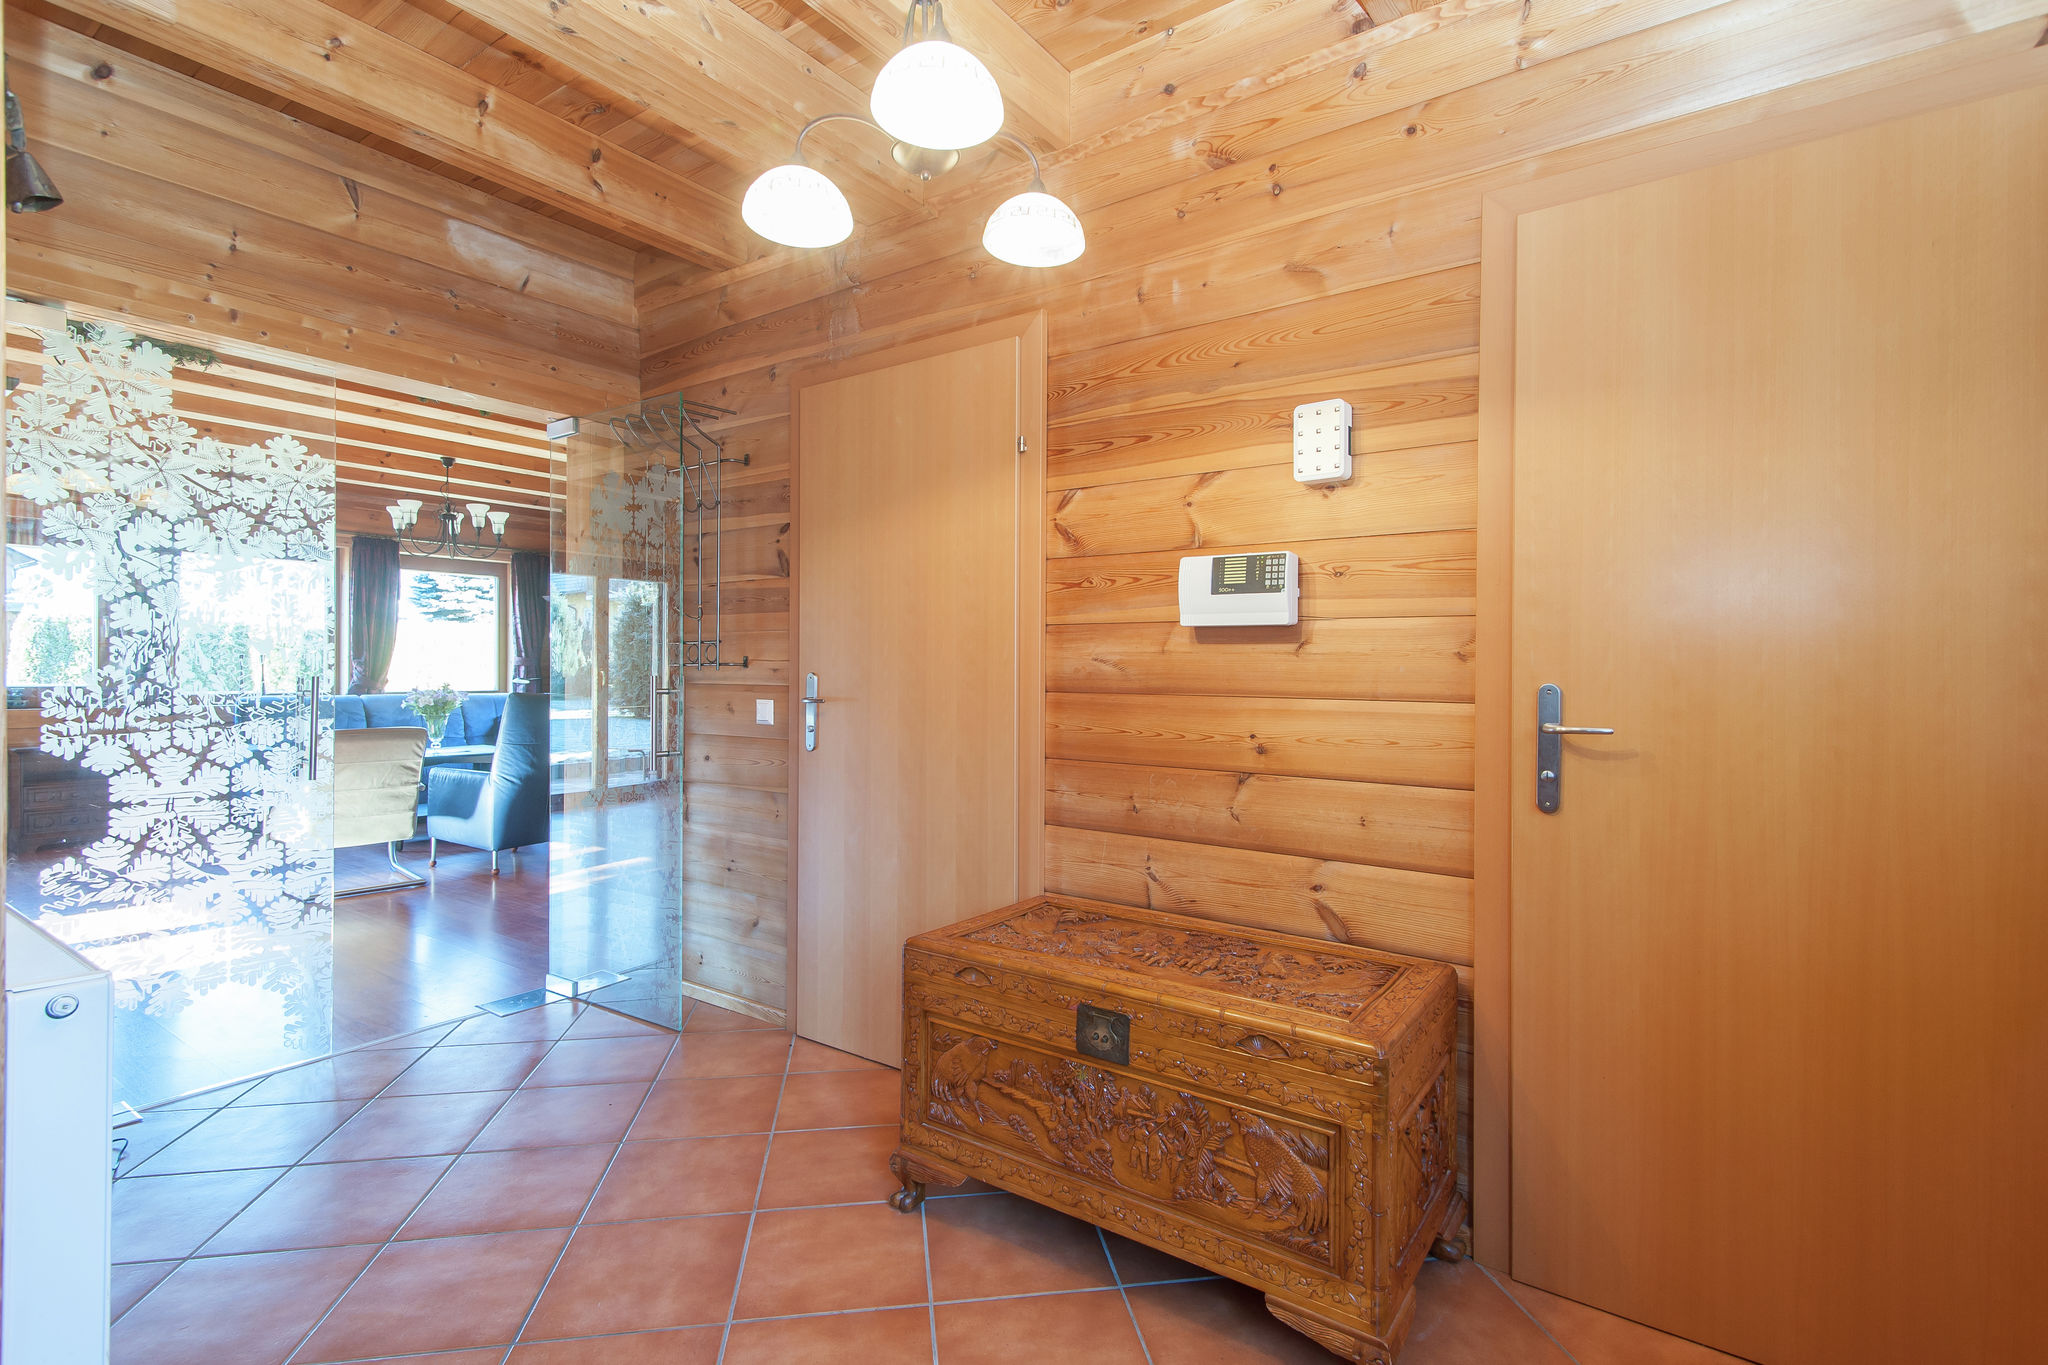 Chalet in Sankt Margarethen with sauna